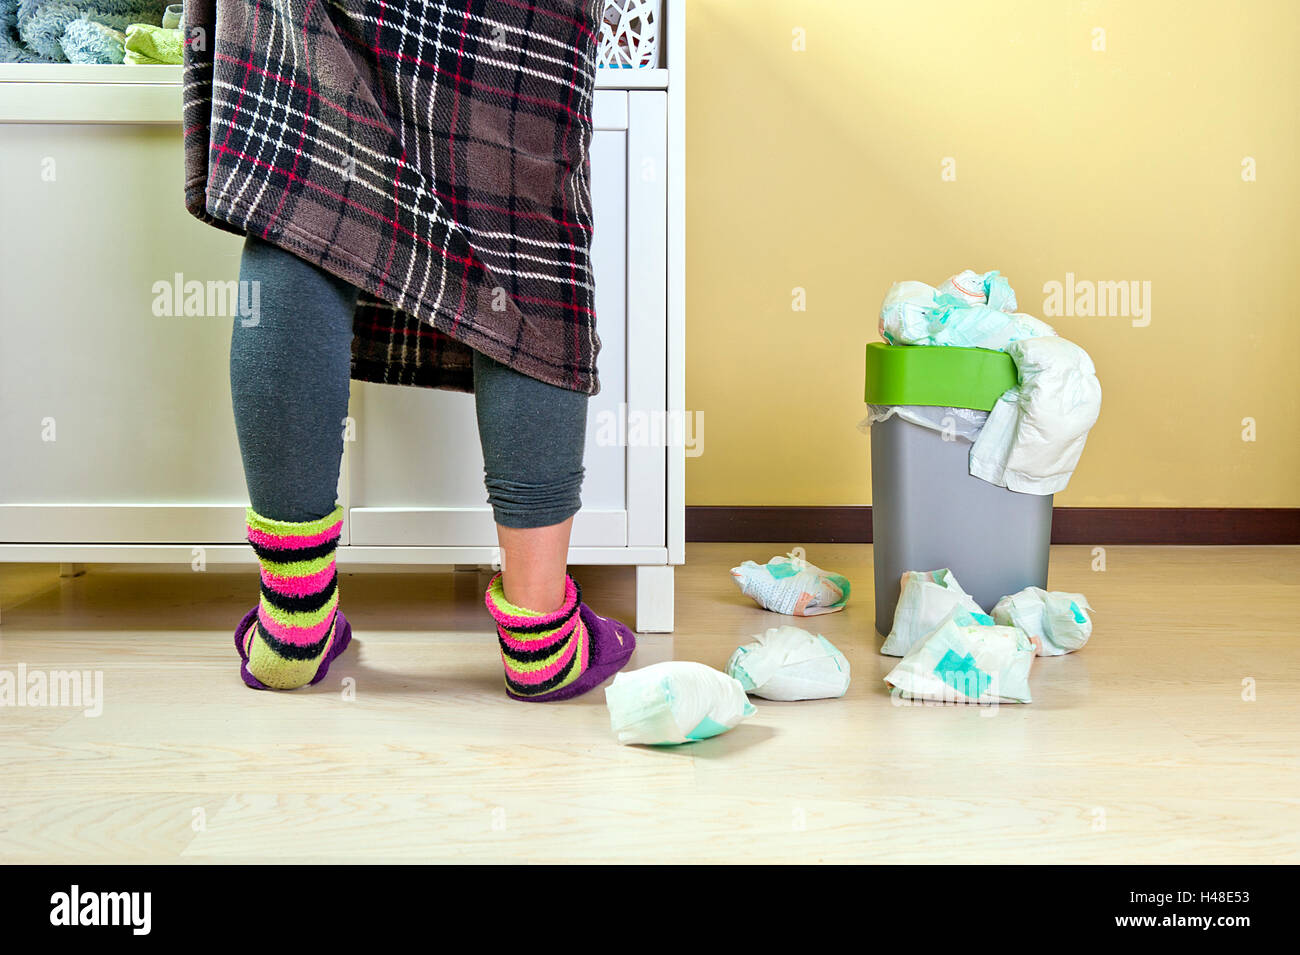 Frau im karierten Rock mit blauen Strumpfhosen und bunte Socken einige  Babys Windeln gebrauchten in einem Abfall Eimer gelegt und Stockfotografie  - Alamy